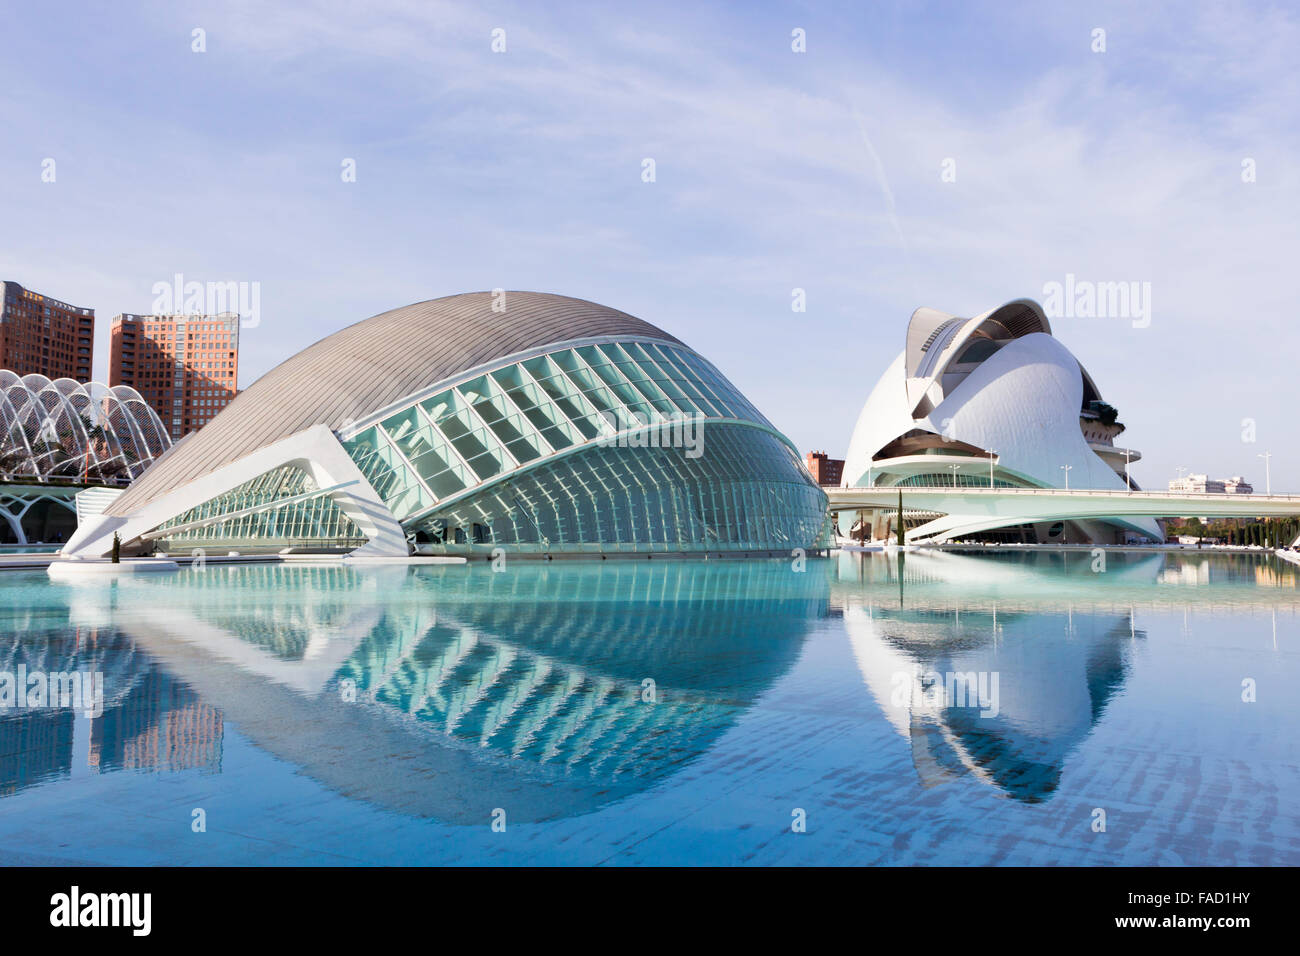 Valencia, Spagna. La Città delle Arti e delle Scienze. L'Hemisfèric. El Palau de les Arts Reina Sofia in background. Foto Stock